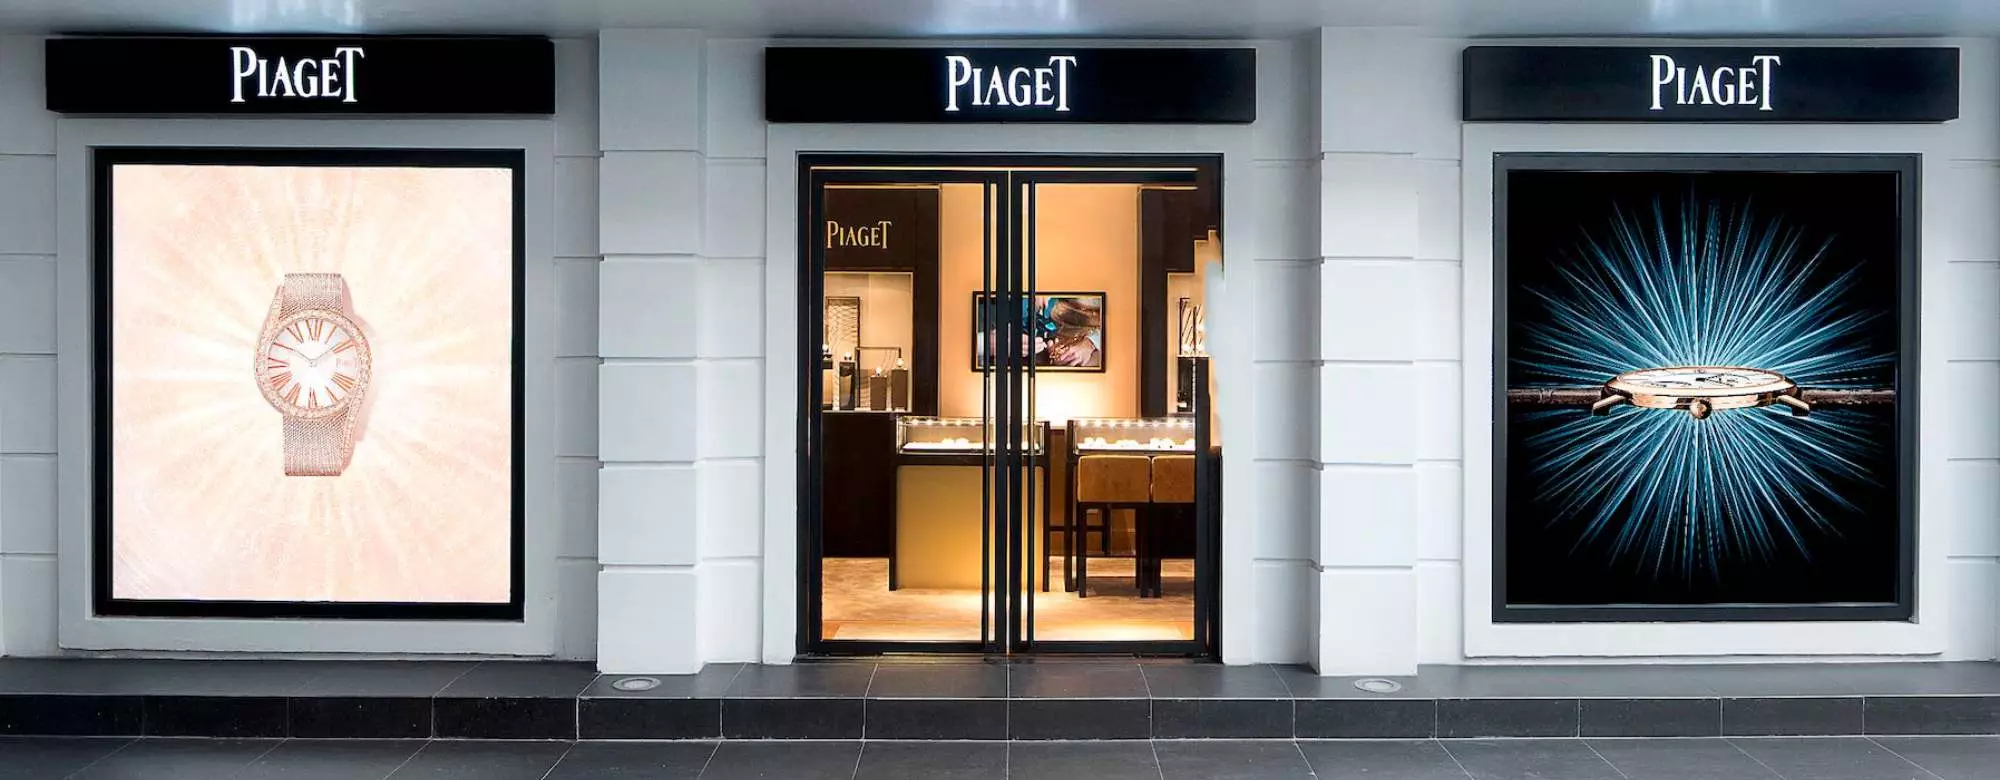 Piaget 17